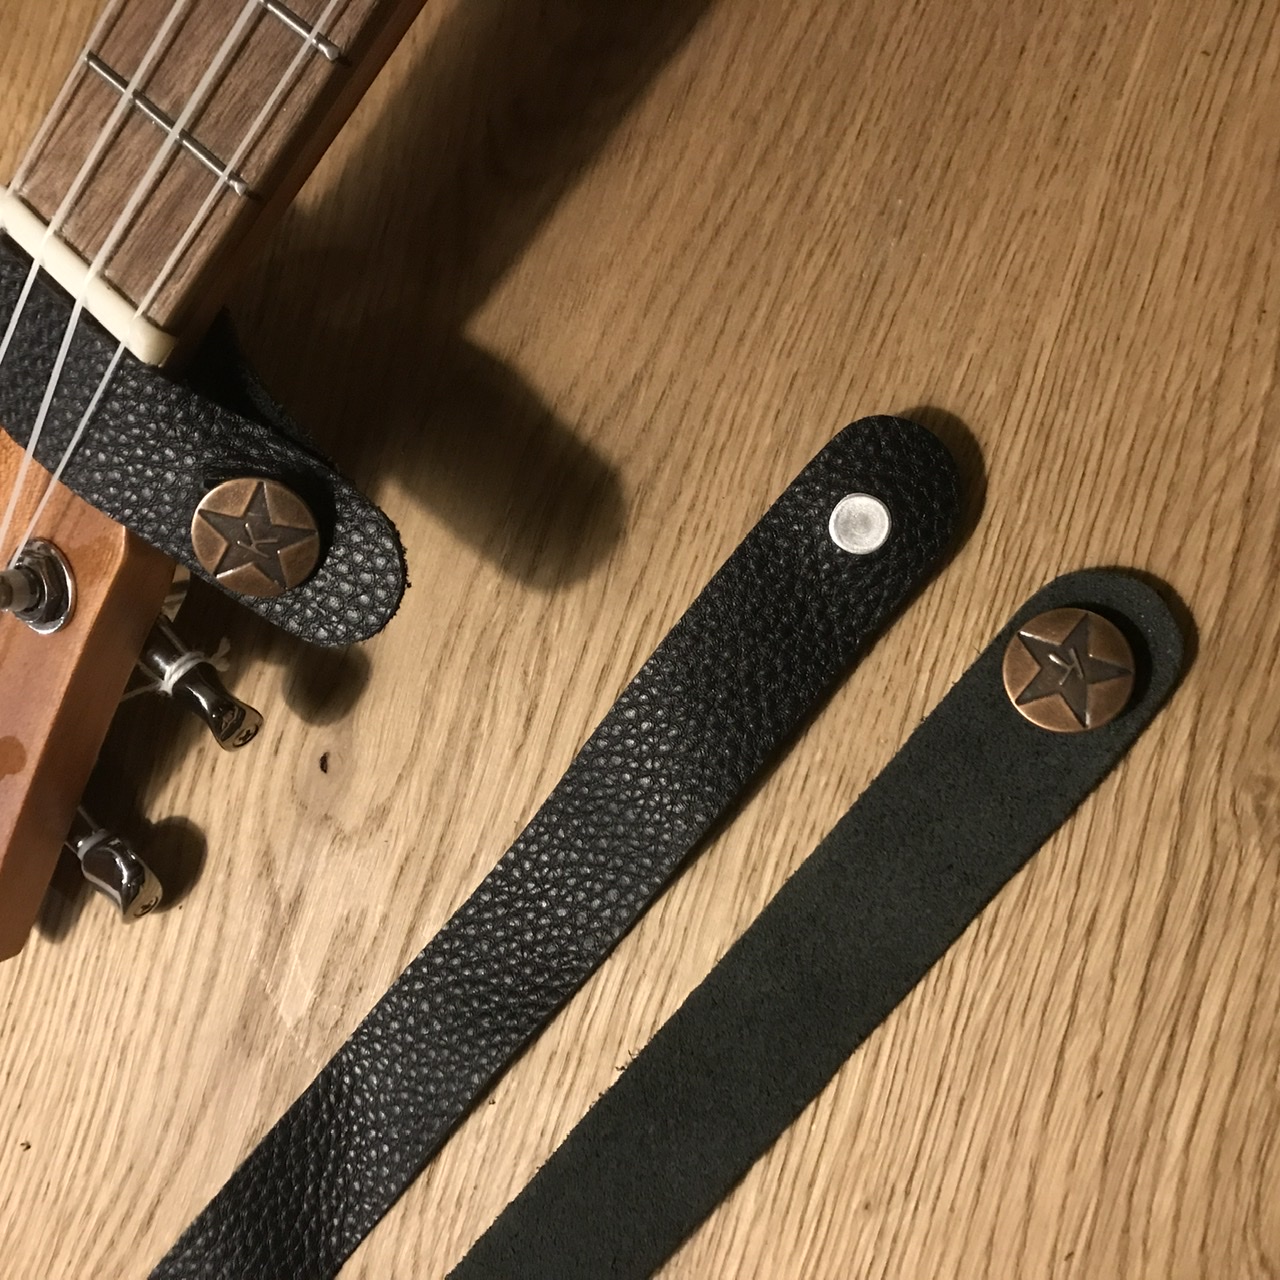 Riempje ukulelestrap bevestigen